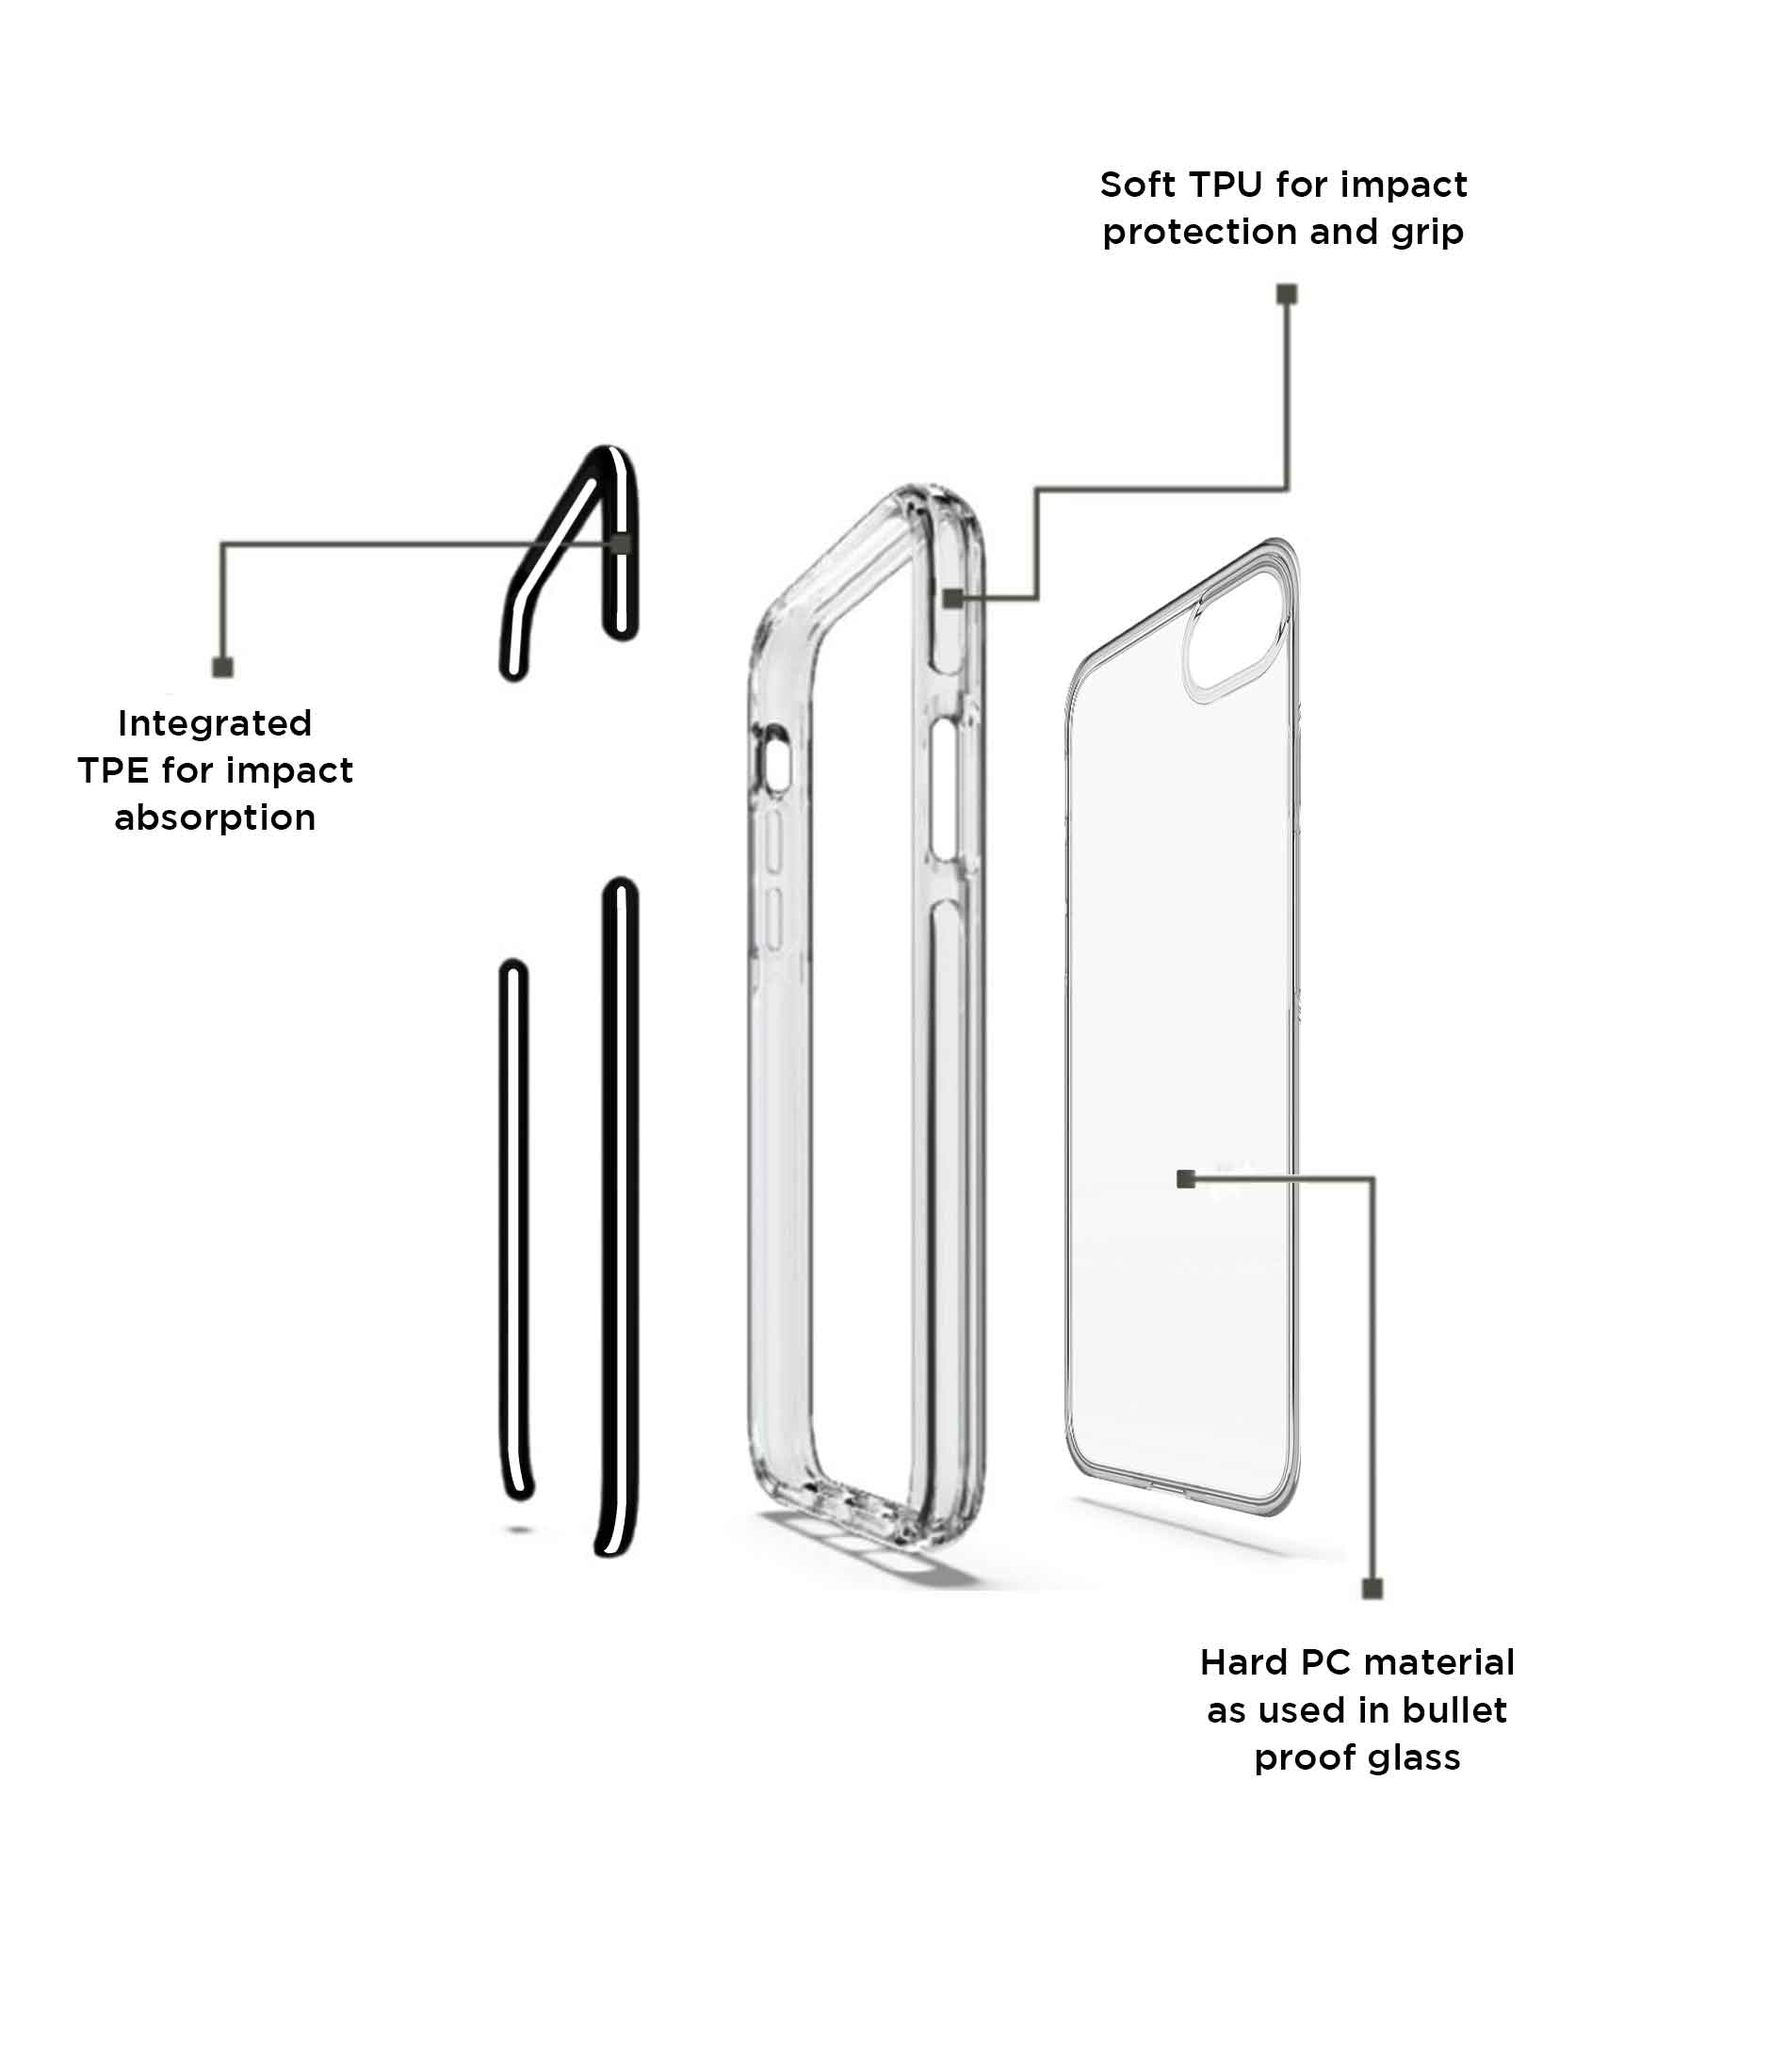 Illuminated Doctor Strange - Extreme Phone Case for iPhone 6S Plus